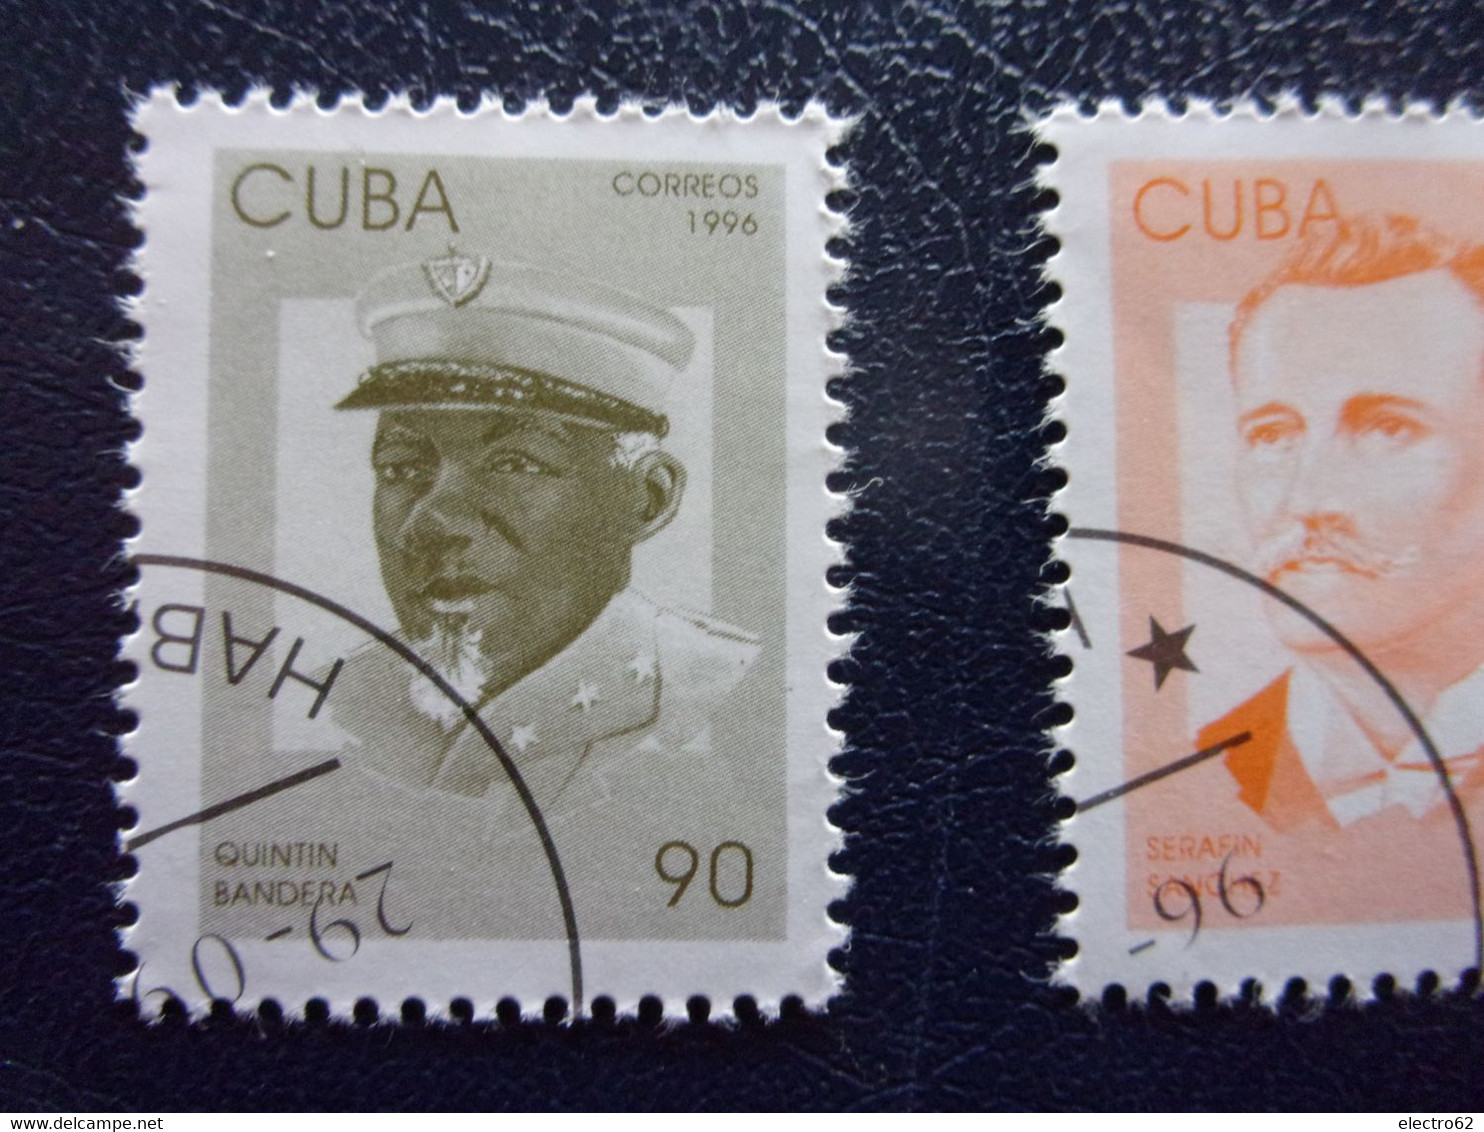 Cuba 1996 Carlos José Antonio Ignacio Méximo Calixto Serafin Juan Quintin patriotes cubains patriotas cubanos